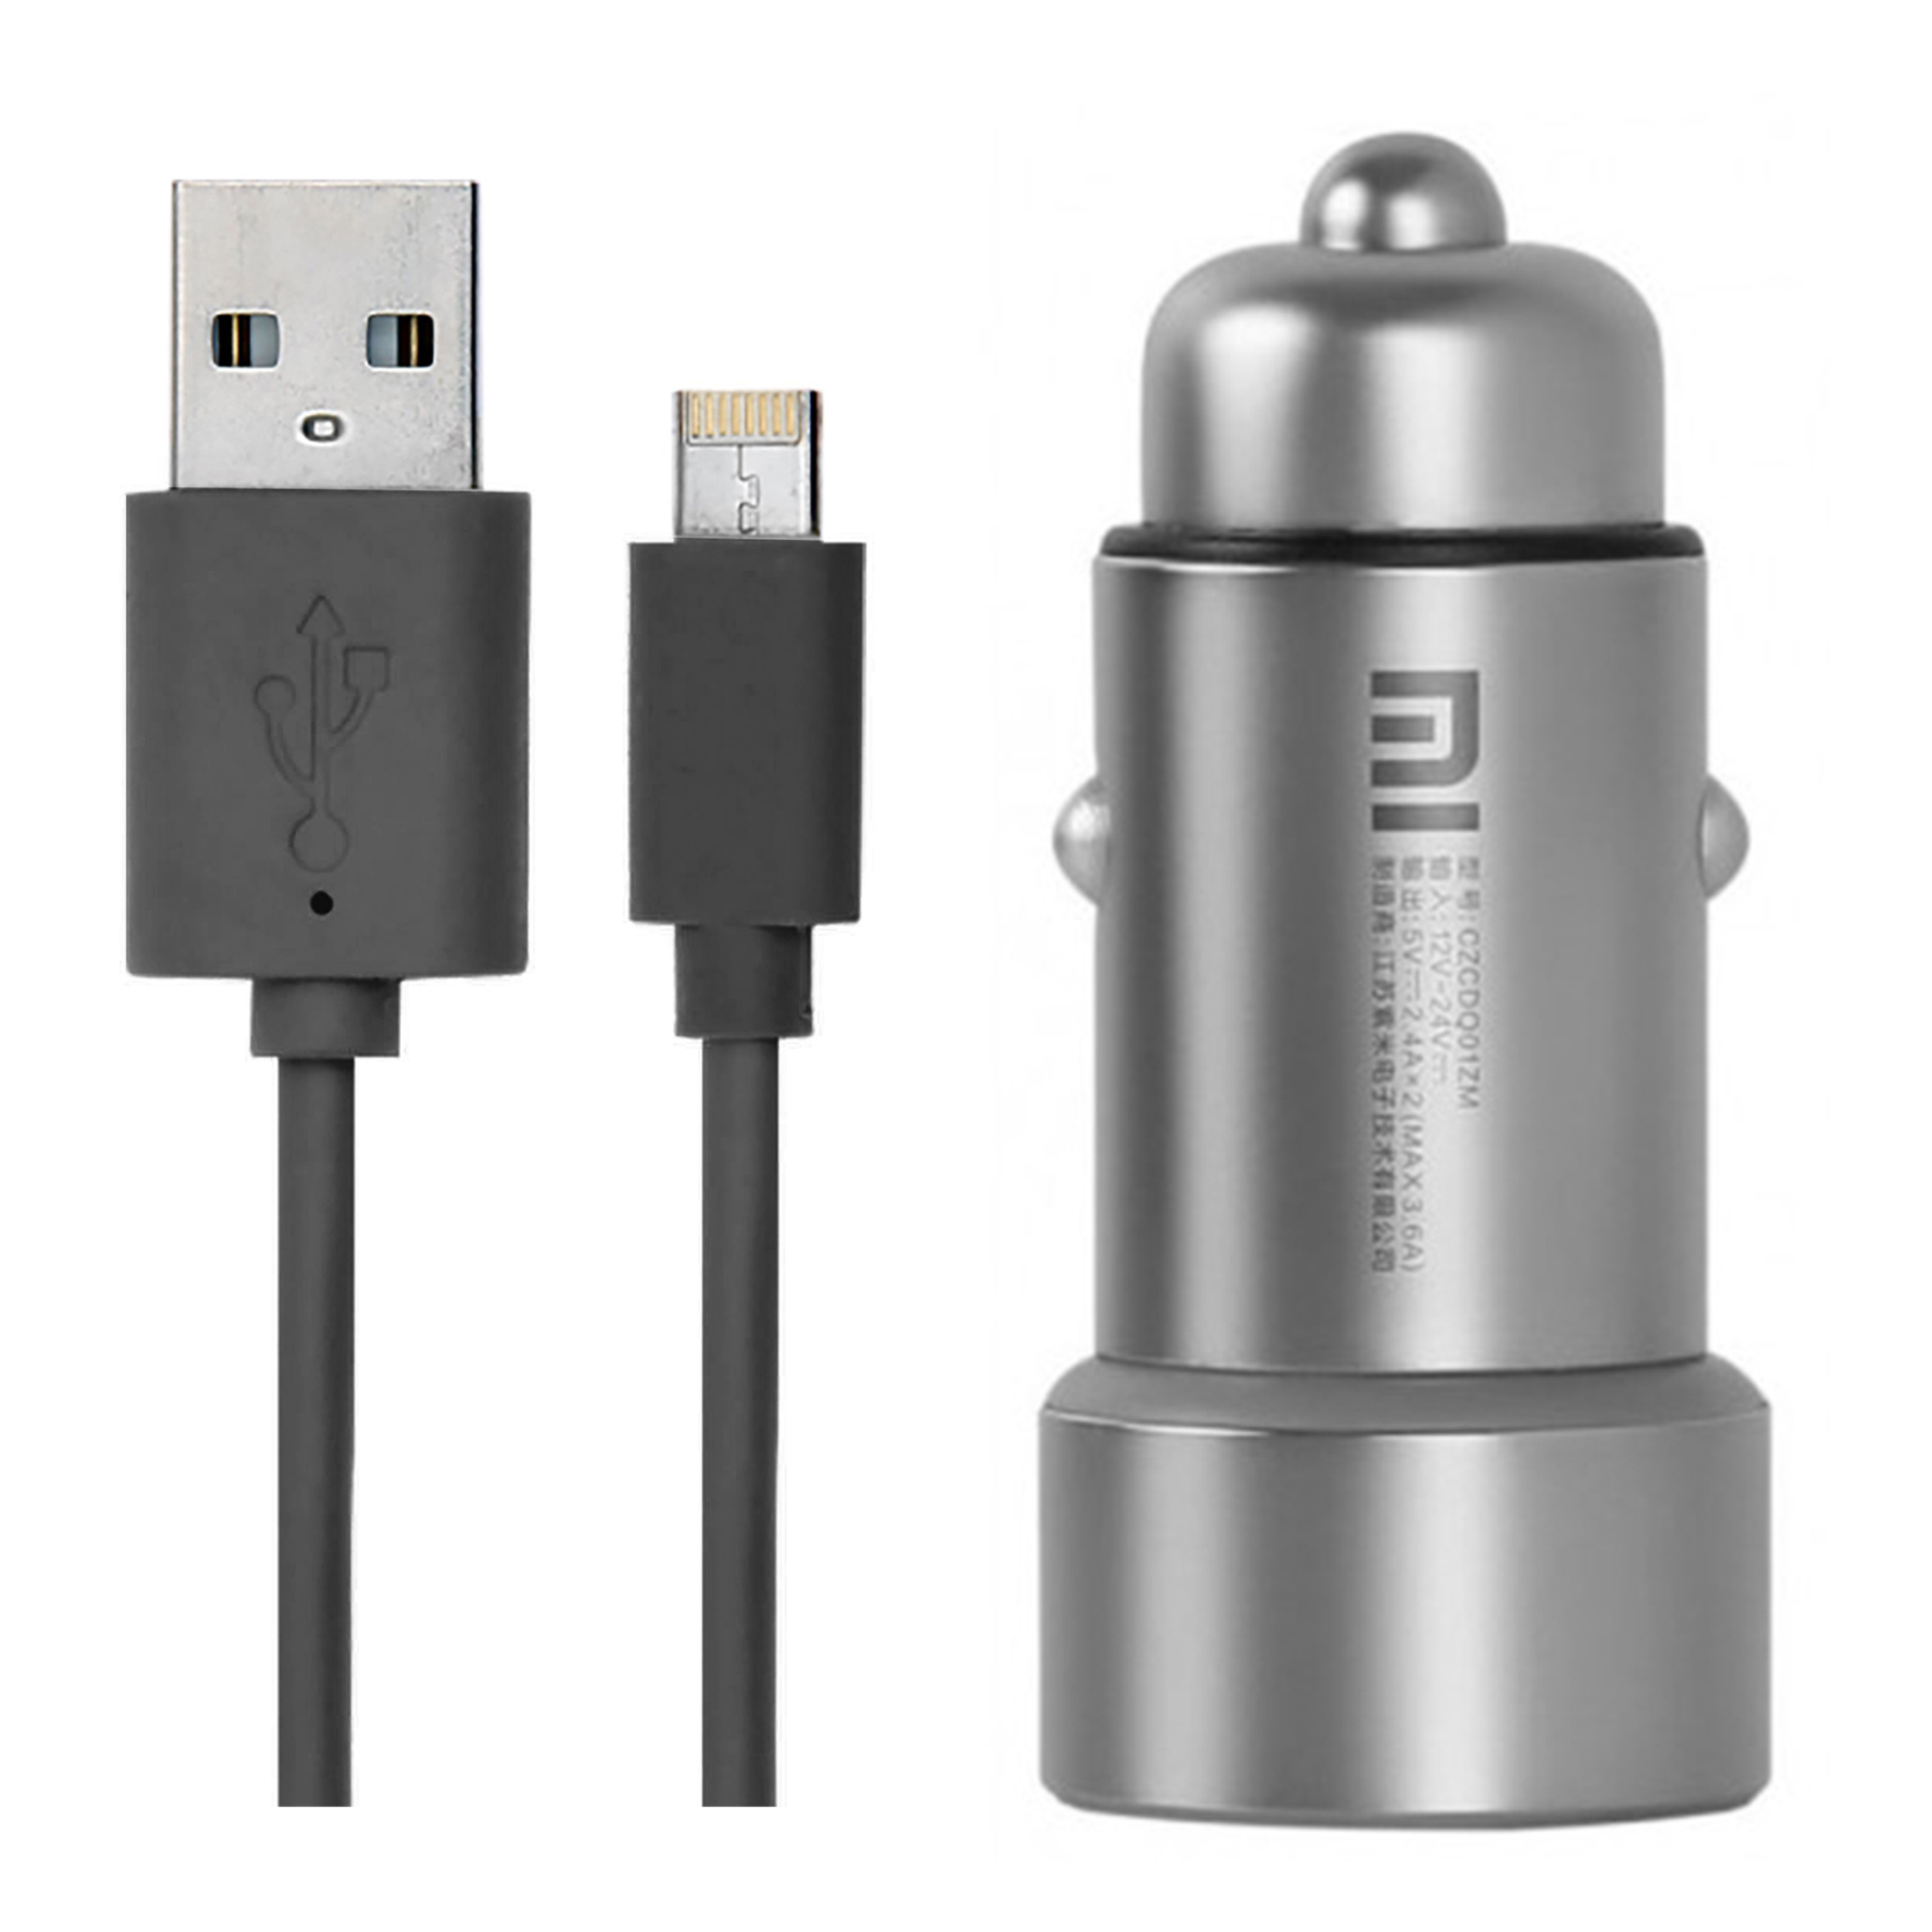 قیمت و خرید شارژر فندکی شیائومی مدل CZCDQ01ZM به همراه کابل تبدیل USB بهلایتنینگ/microUSB